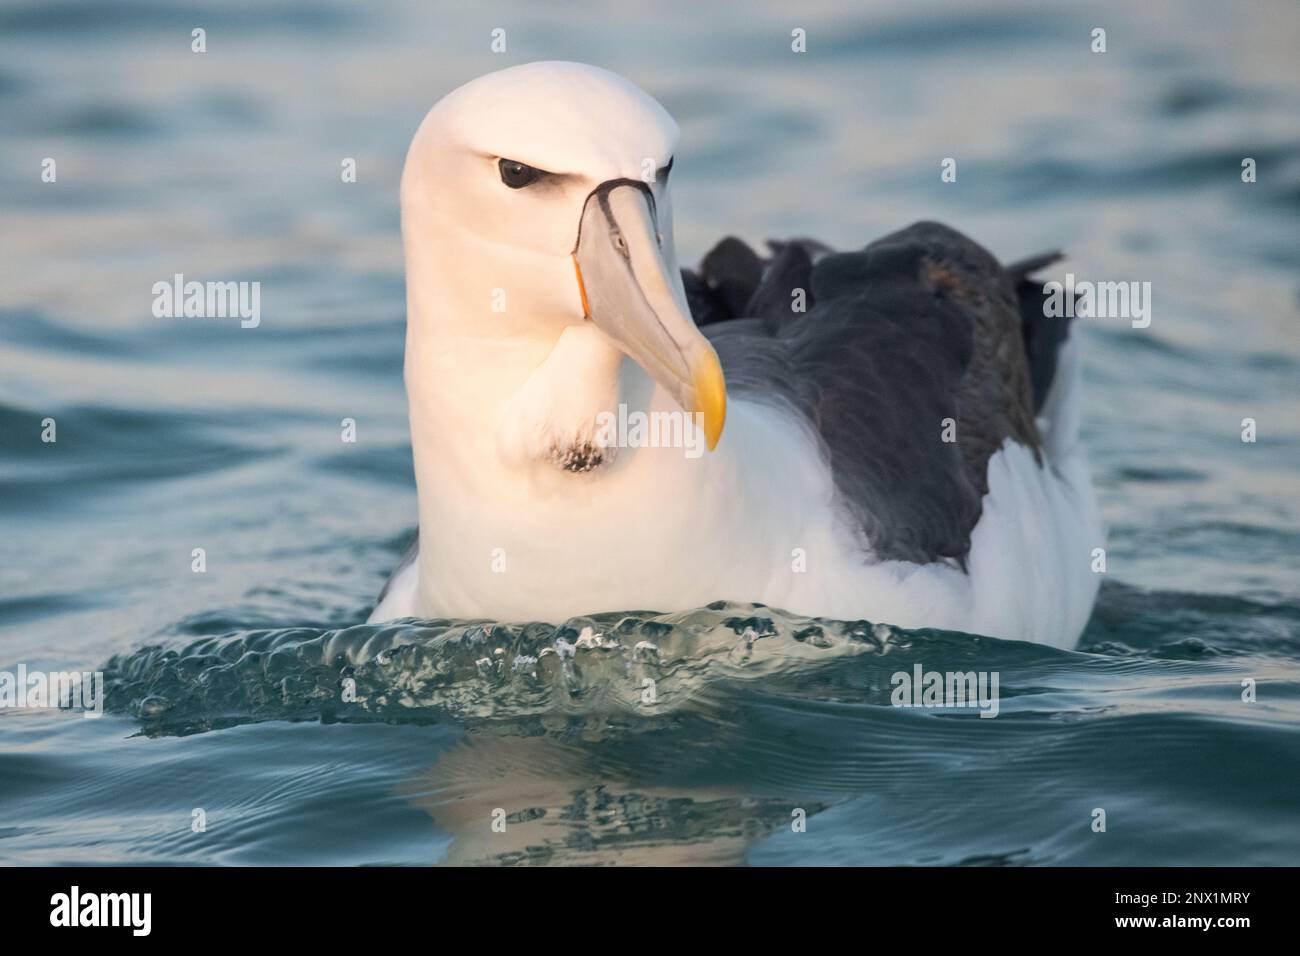 Weißkappen-Albatros (Thalassarche cauta steadi) ist ein Mollymawk oder kleiner Albatros, der im Pazifischen Ozean um Neuseeland zu finden ist. Stockfoto